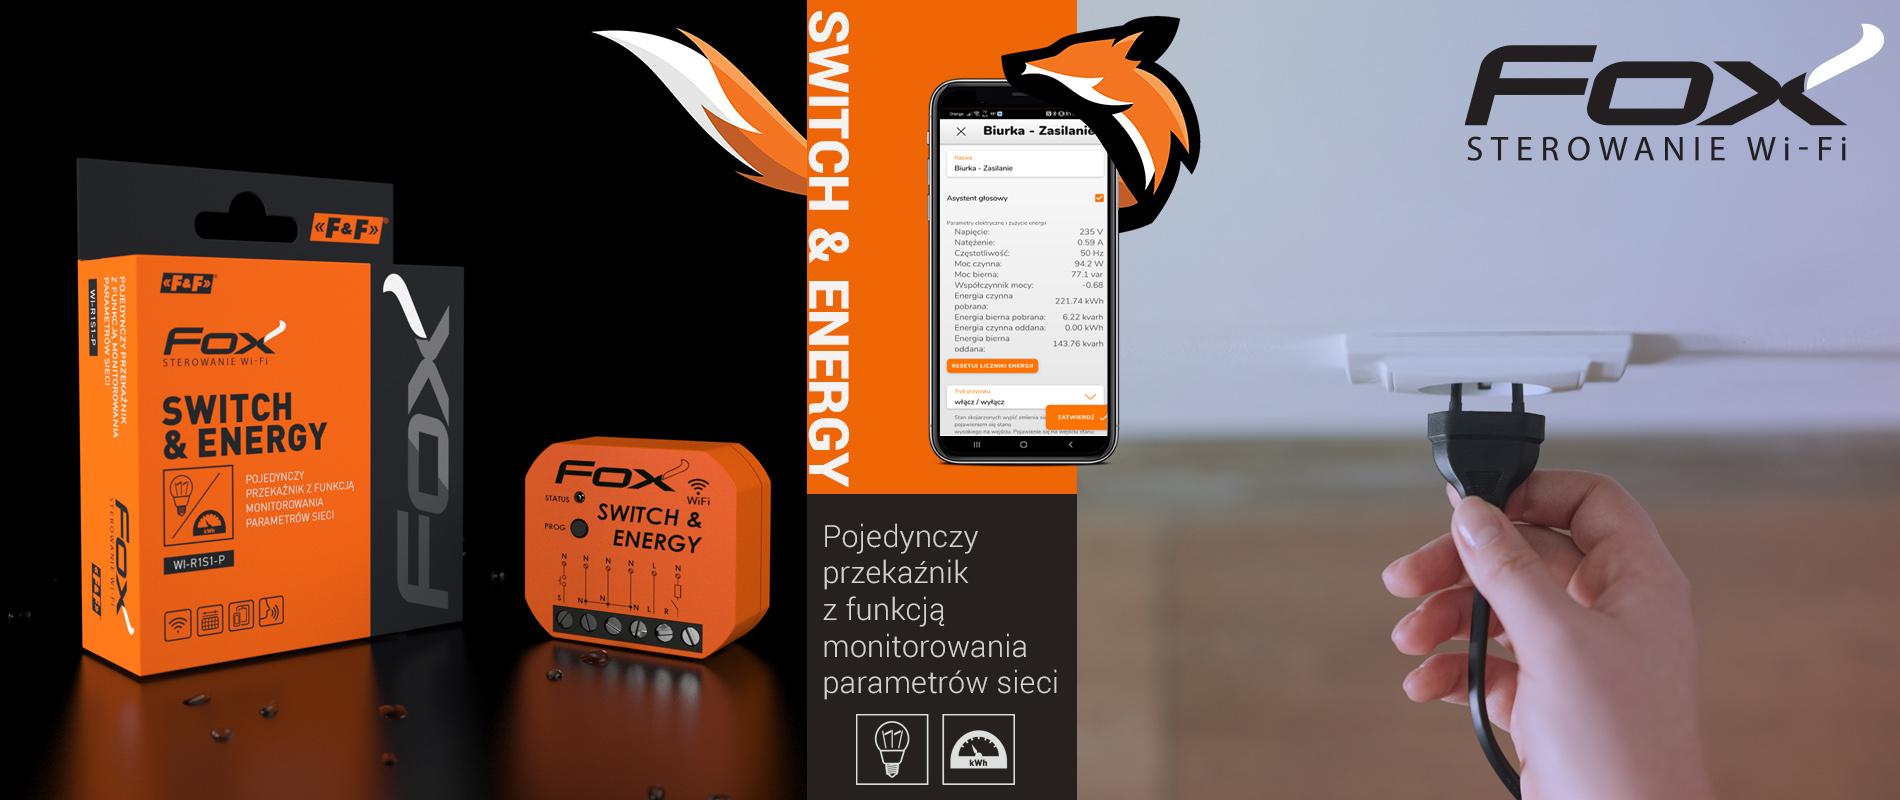 FOX Przekaźnik Wi-Fi do puszki 230 V SWITCH & ENERGY z funkcją monitorowania parametrów sieci WI-R1S1-P F&F FILIPOWSKI-3